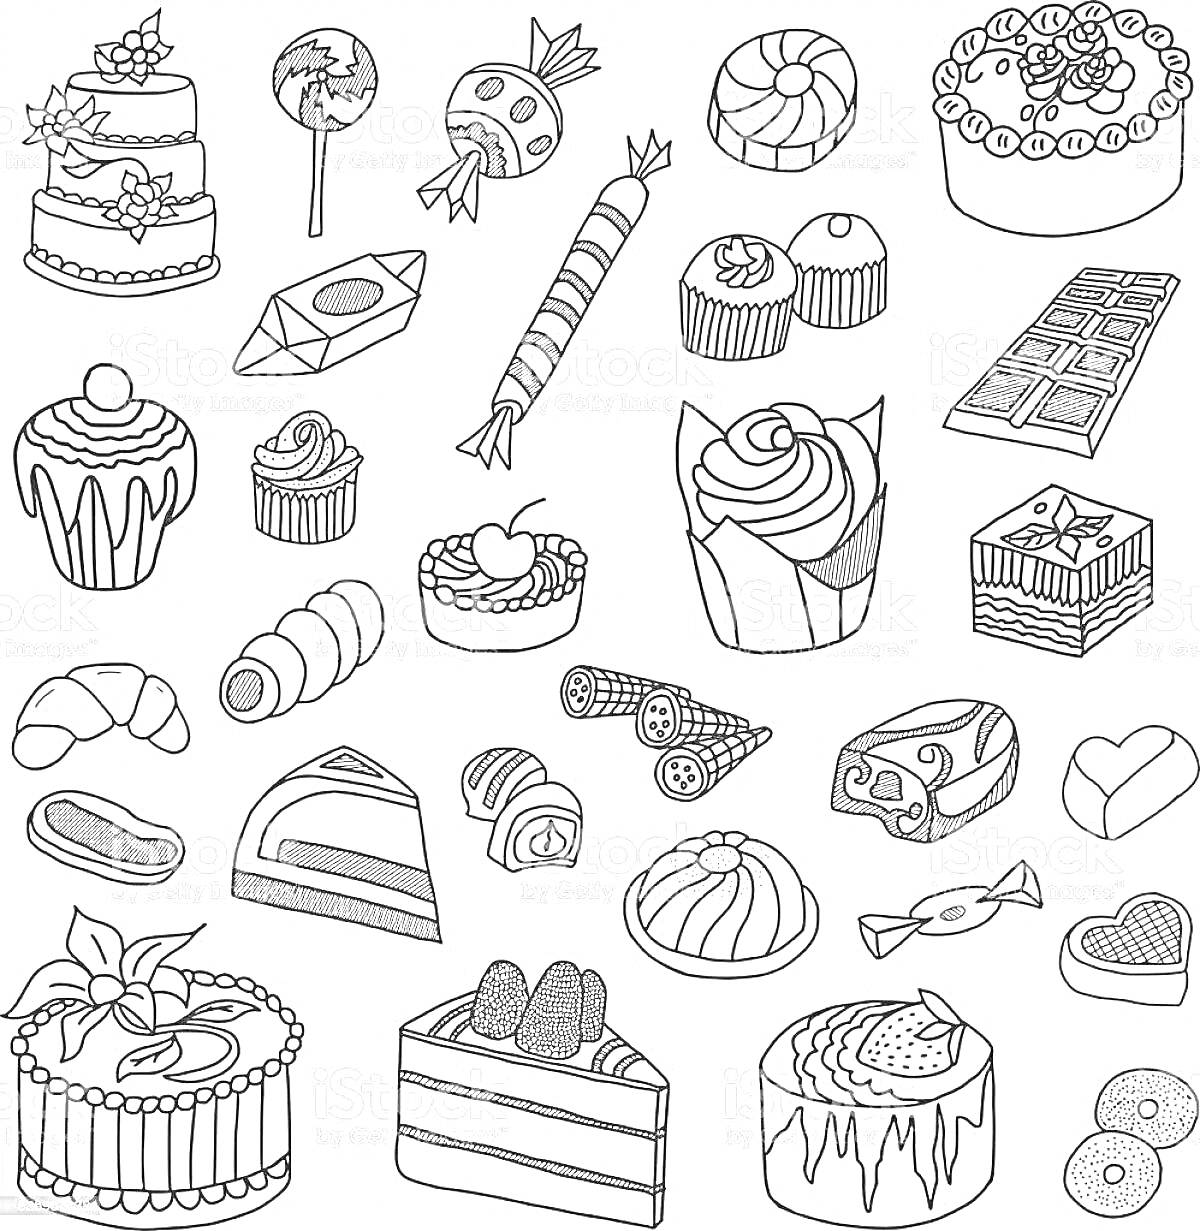 Раскраска Разнообразные кондитерские изделия: торты, пирожные, капкейки, шоколад, круассаны, леденцы, конфеты